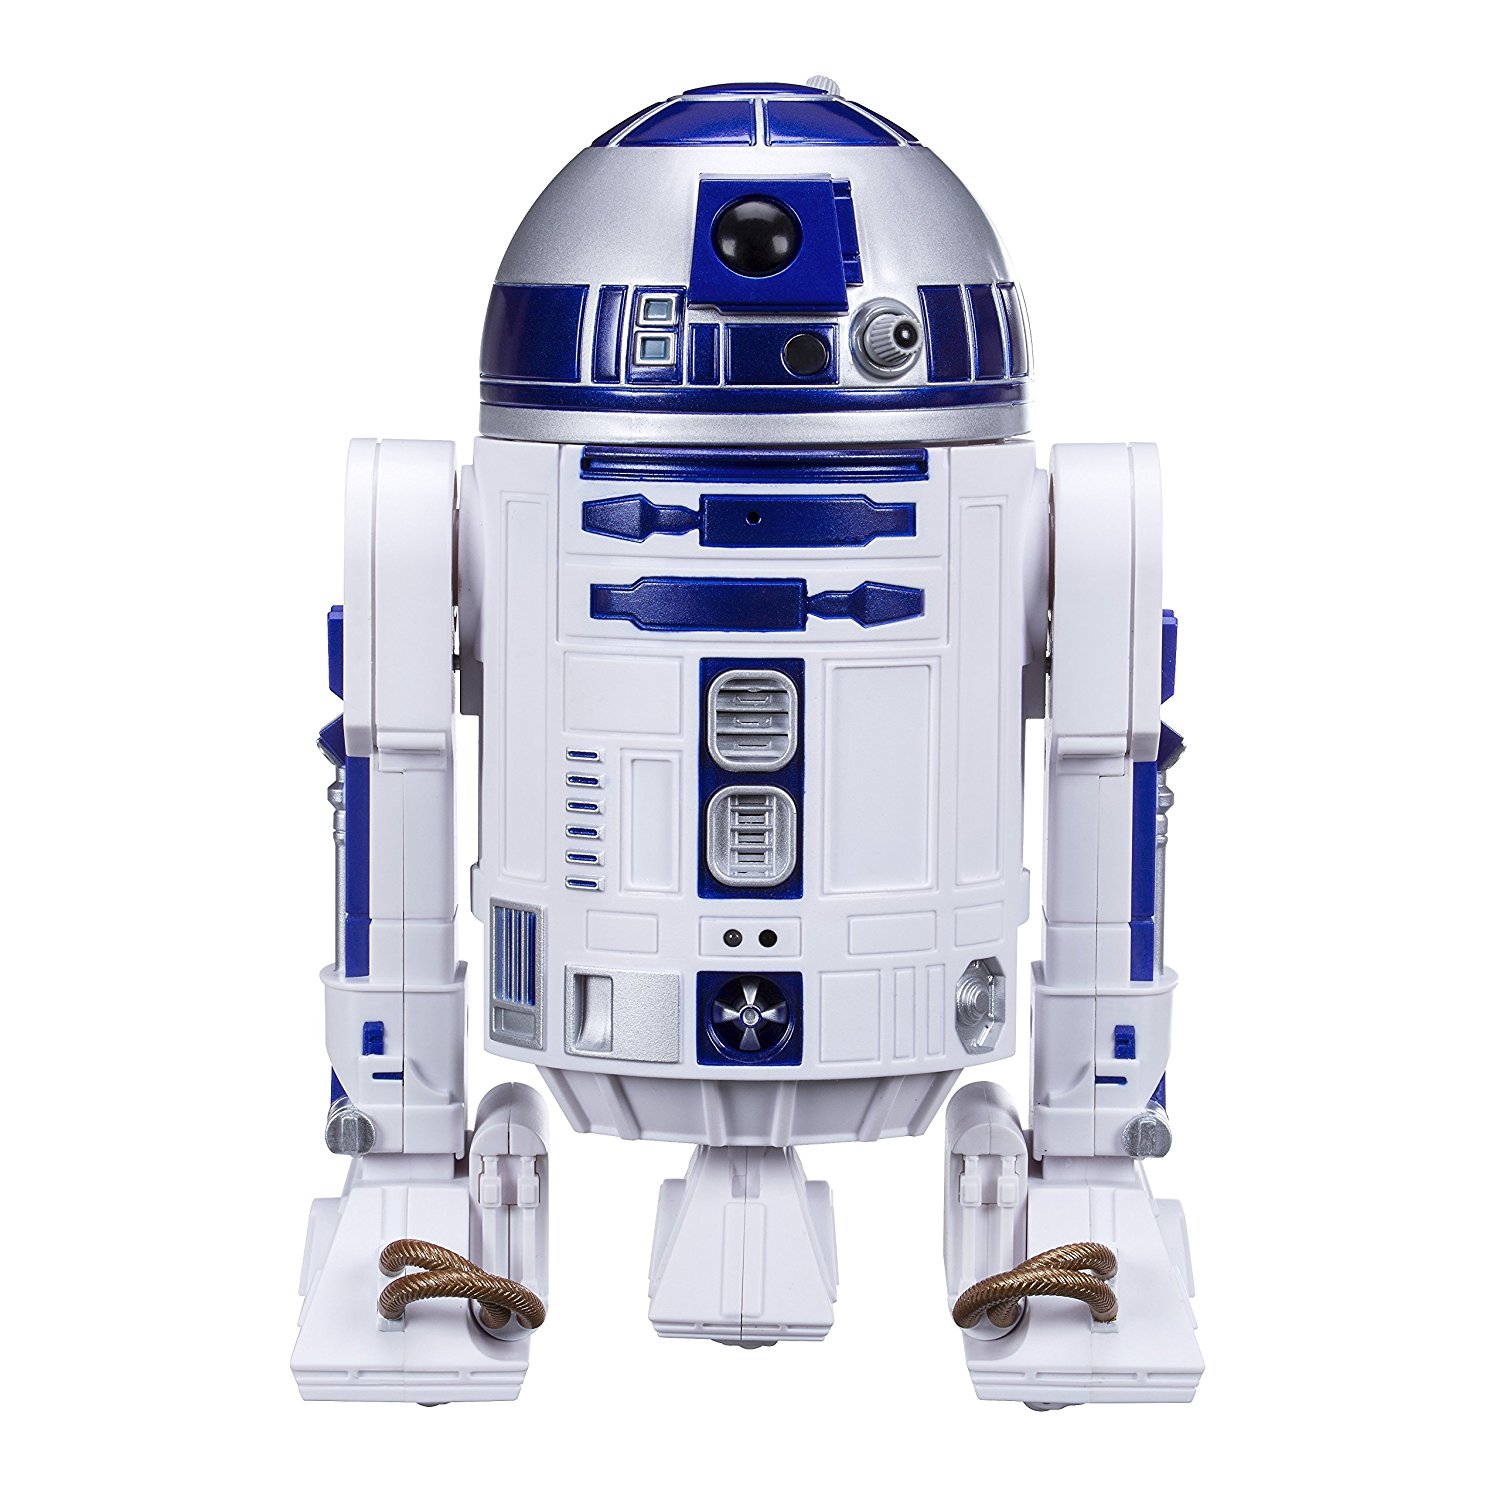 Robot Star Wars : Notre avis 2020 sur le Sphero R2-D2 drone